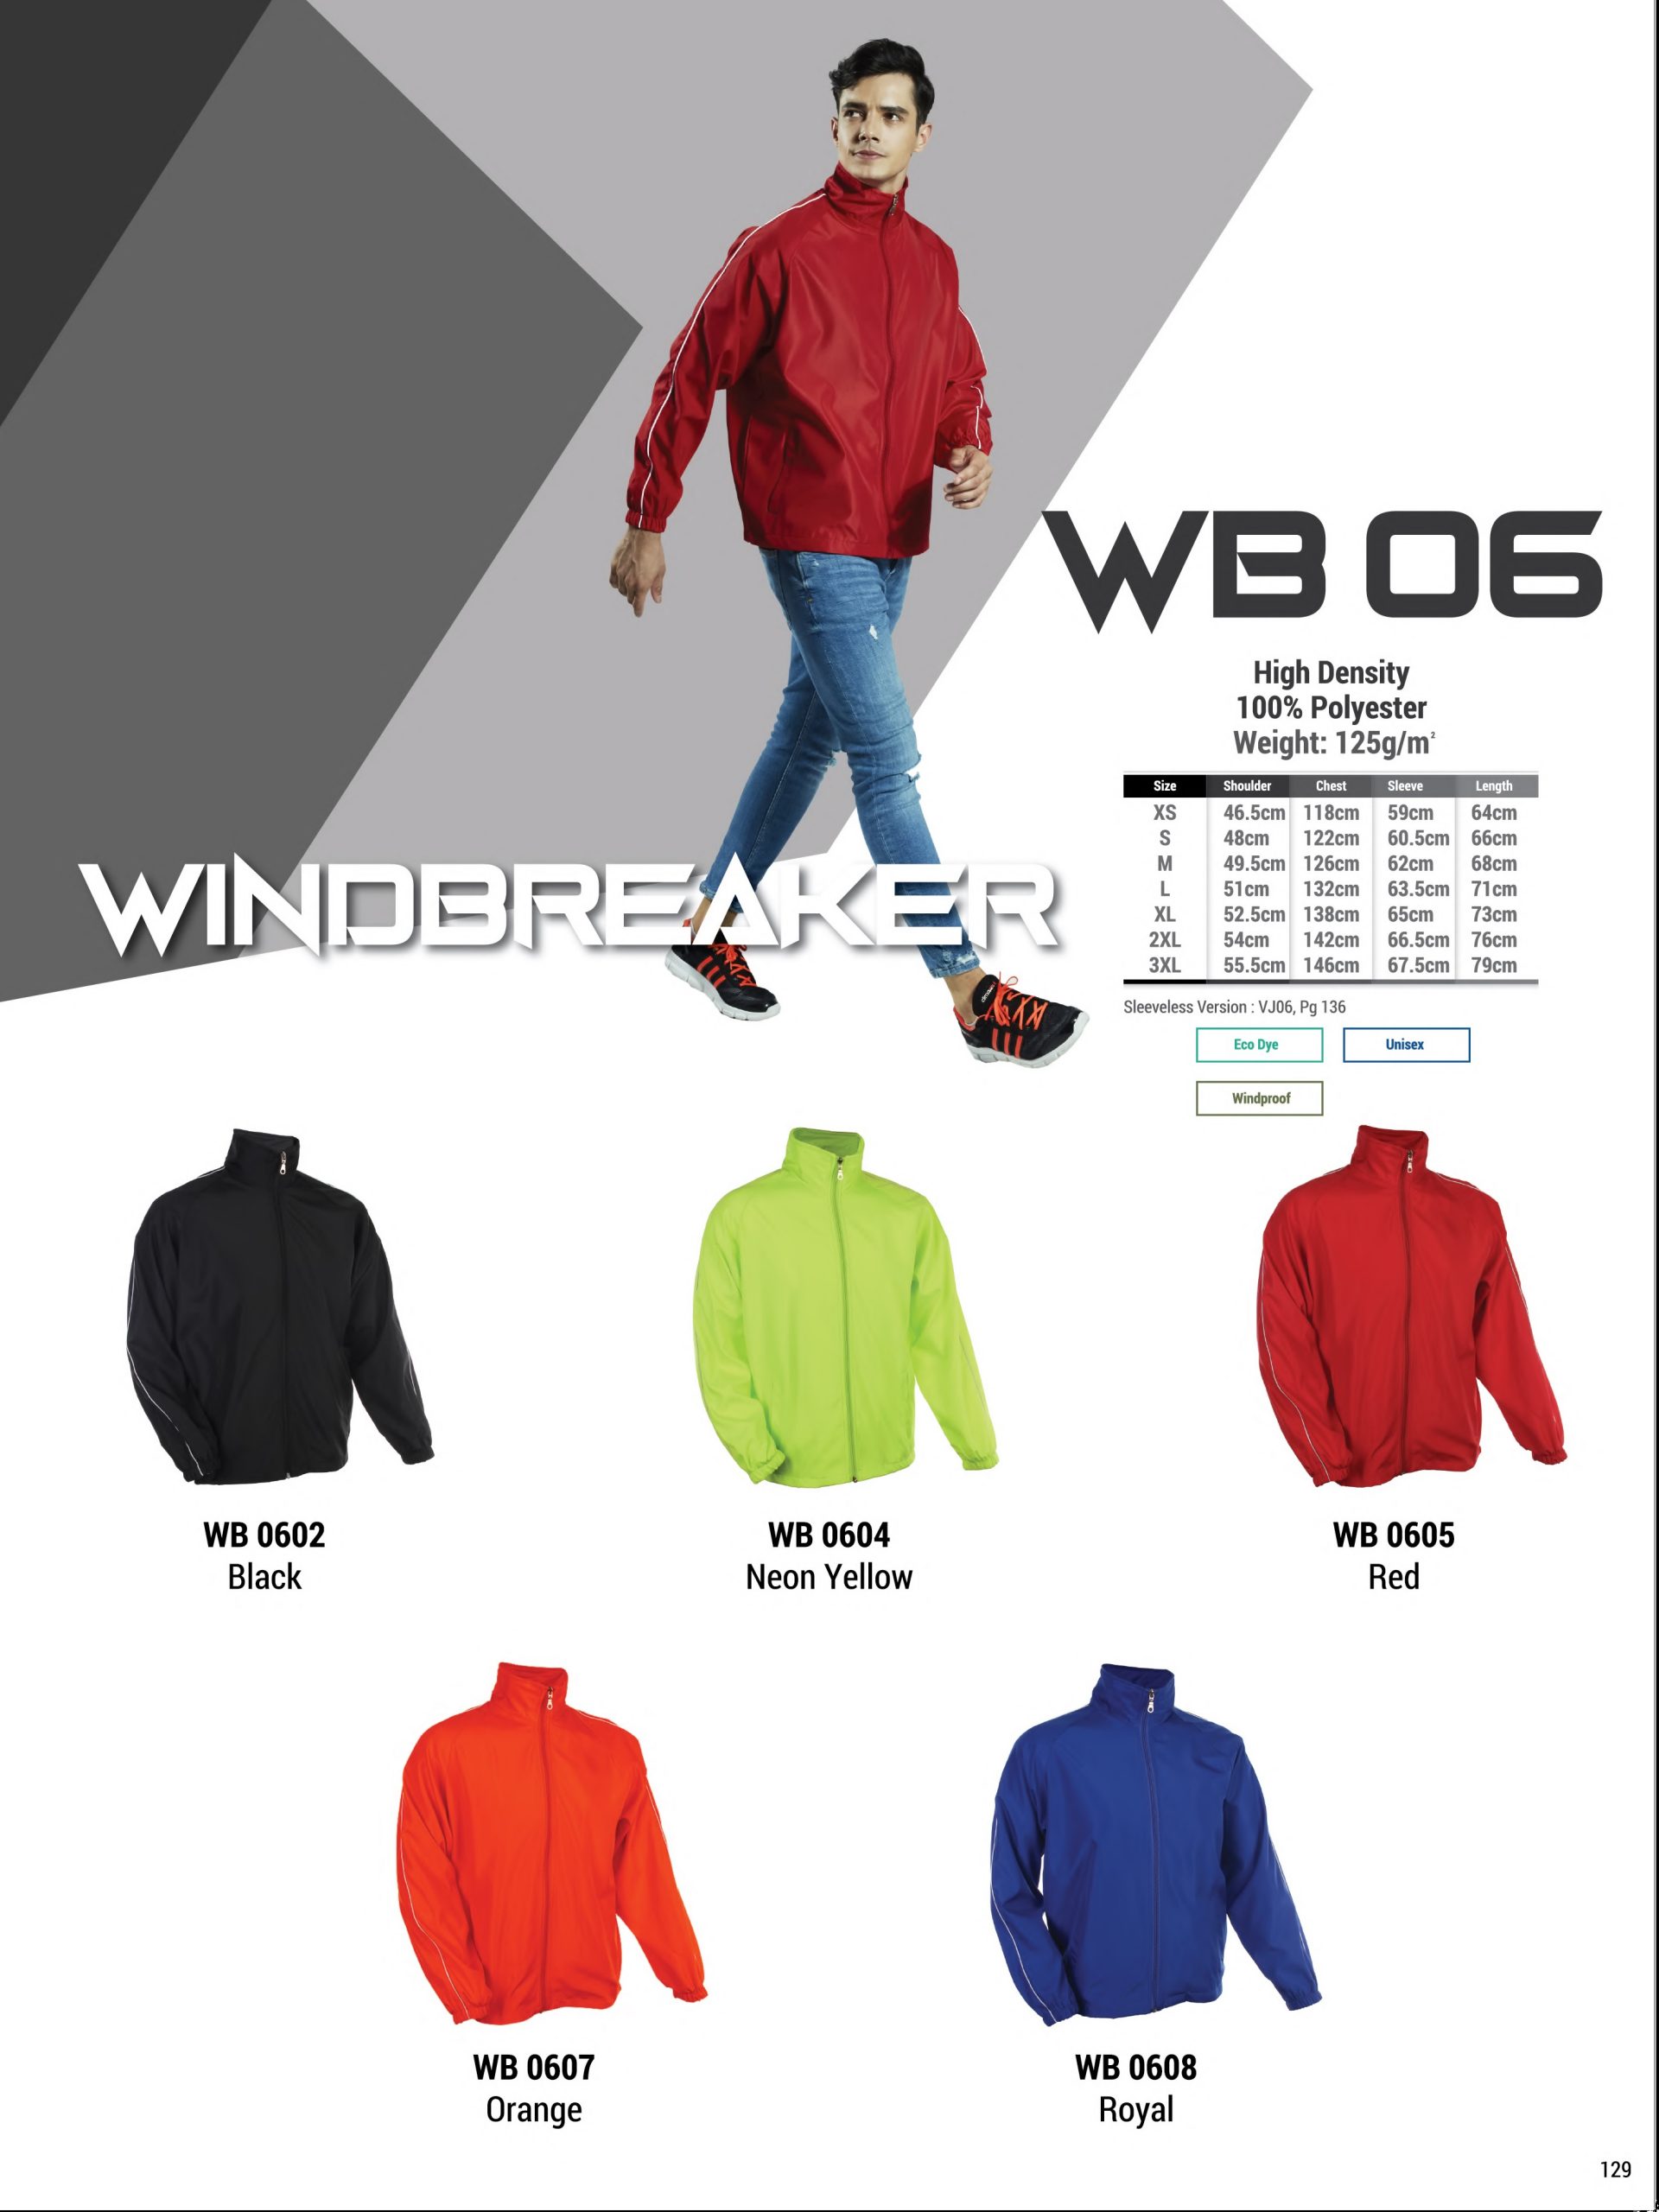 WB06 Windbreaker